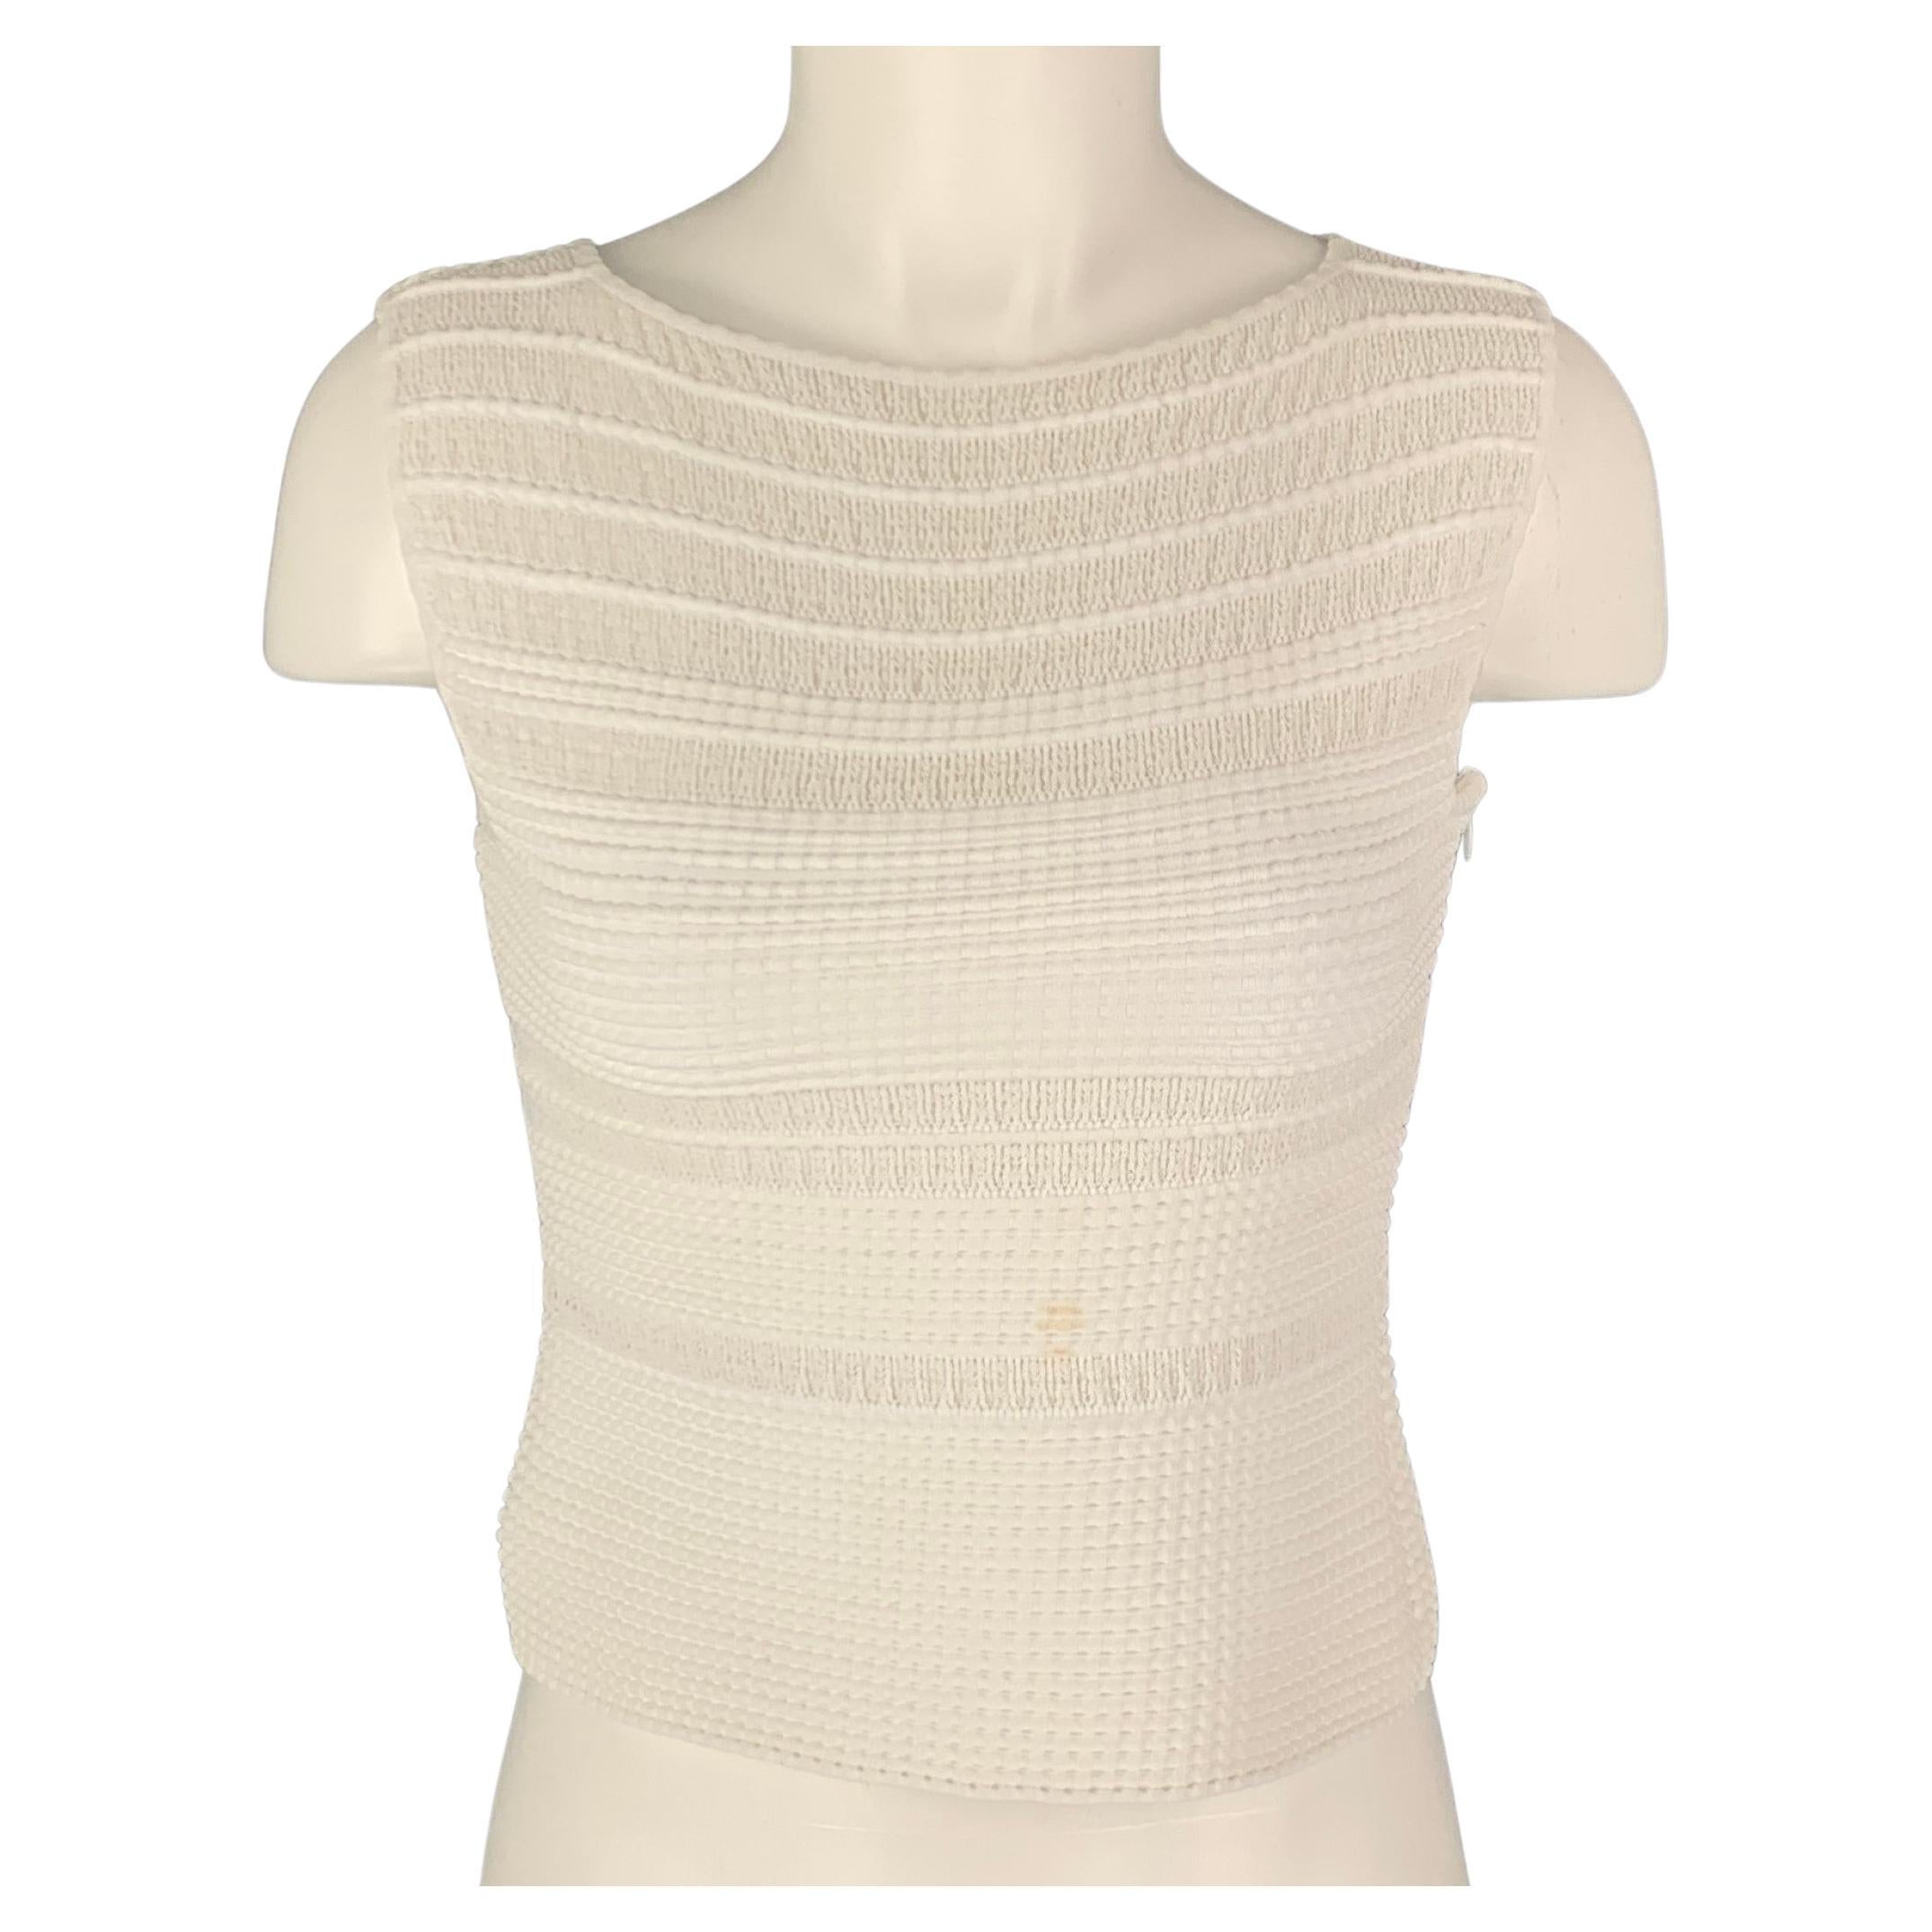 ALAIA Size 6 White Cotton Blend Textured Sleeveless Dress Top